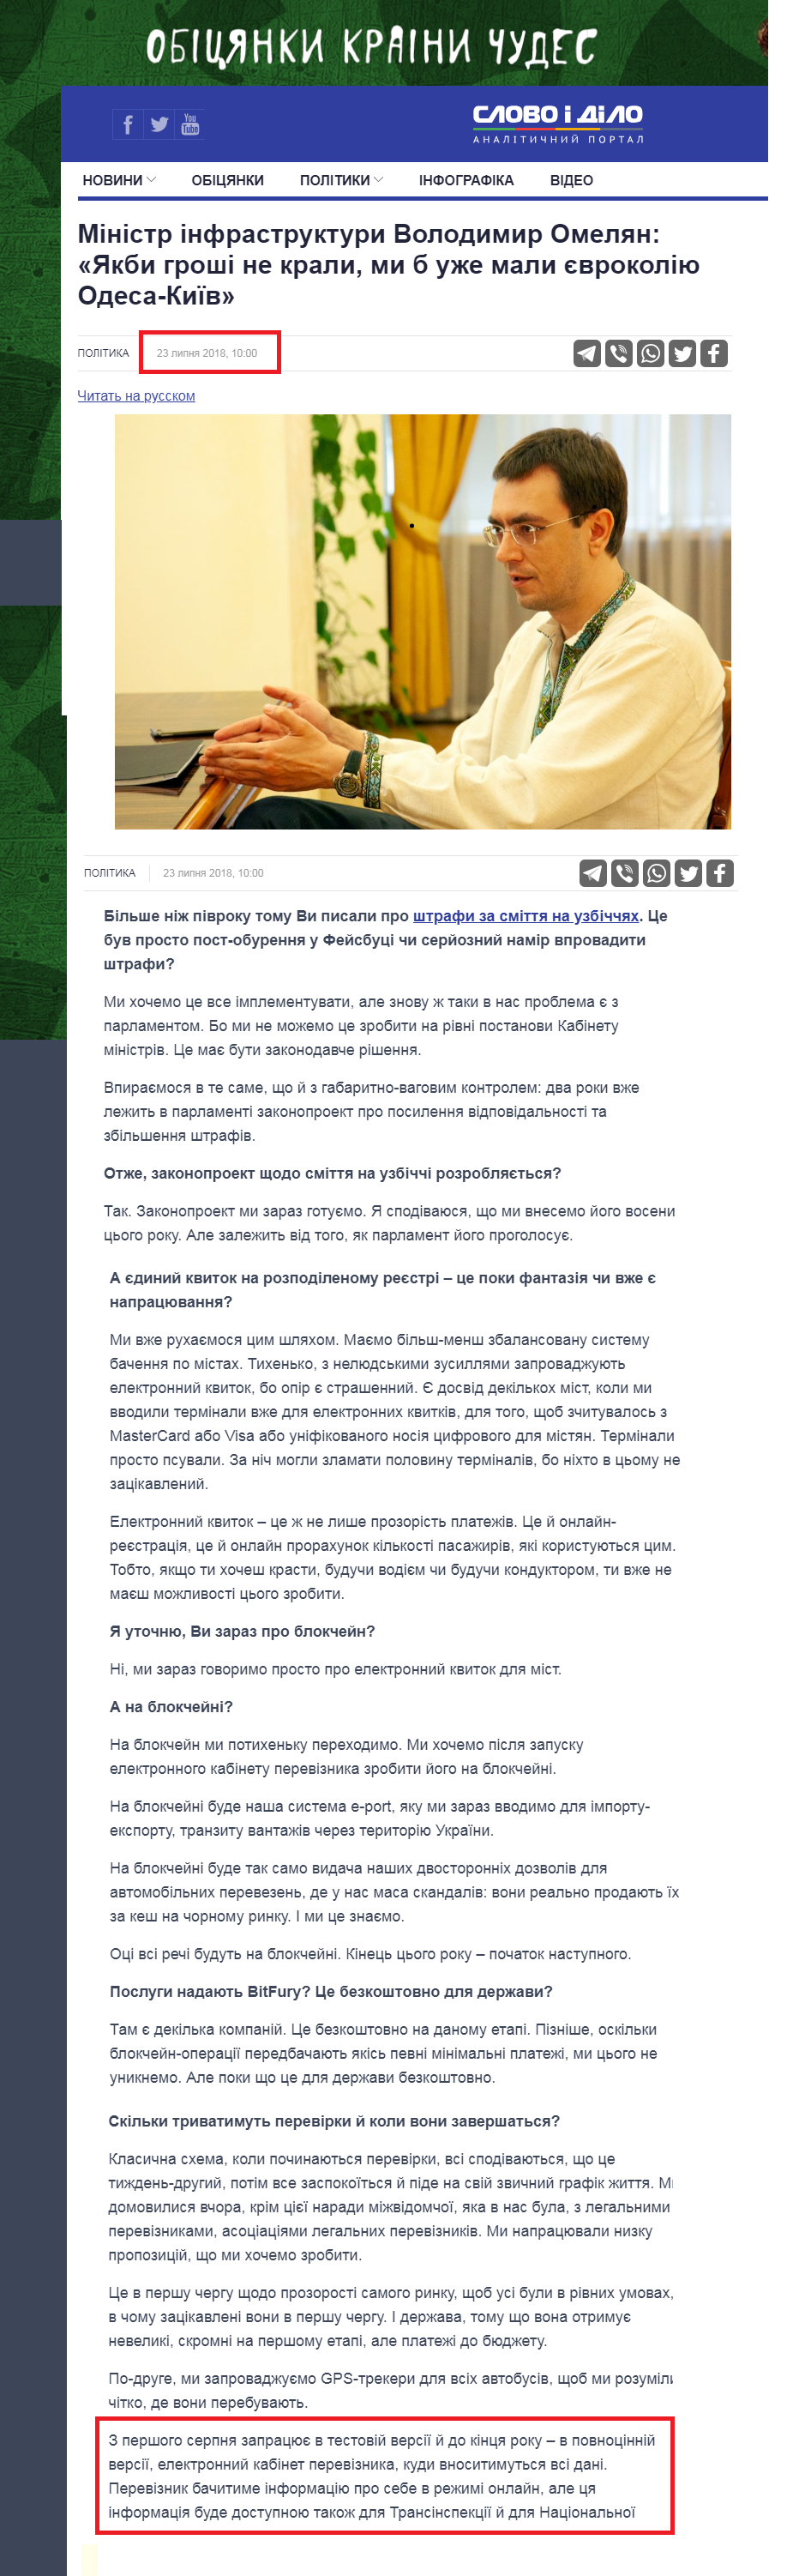 https://www.slovoidilo.ua/2018/07/23/novyna/polityka/ministr-infrastruktury-volodymyr-omelyan-yakby-hroshi-ne-kraly-my-uzhe-maly-yevrokoliyu-odesa-kyyiv